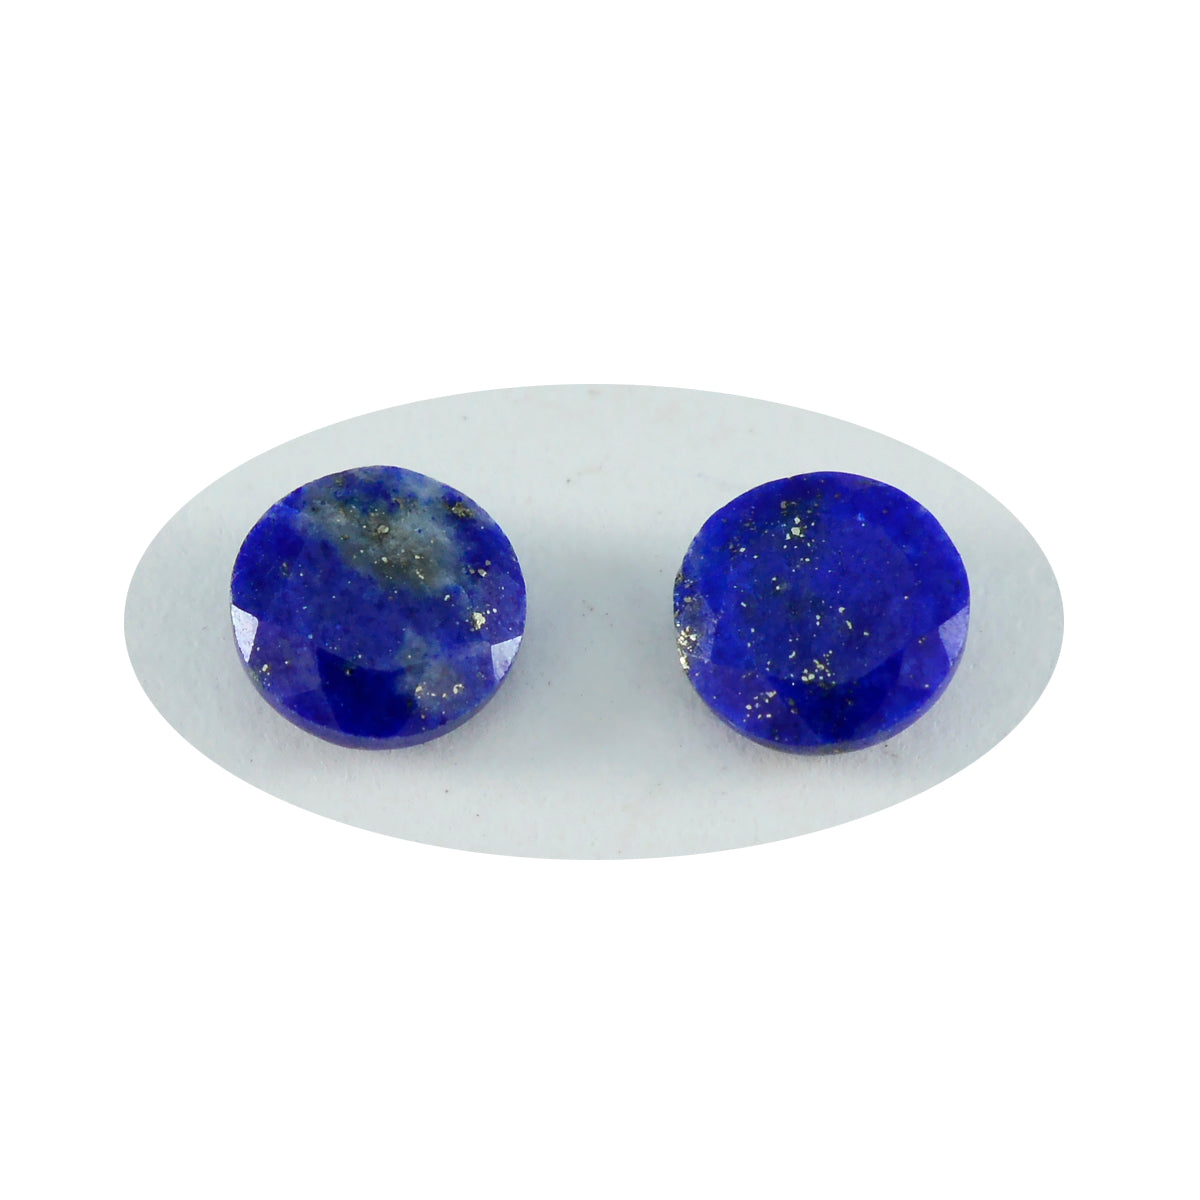 riyogems 1st äkta blå lapis lazuli facetterad 13x13 mm rund form fin kvalitetssten